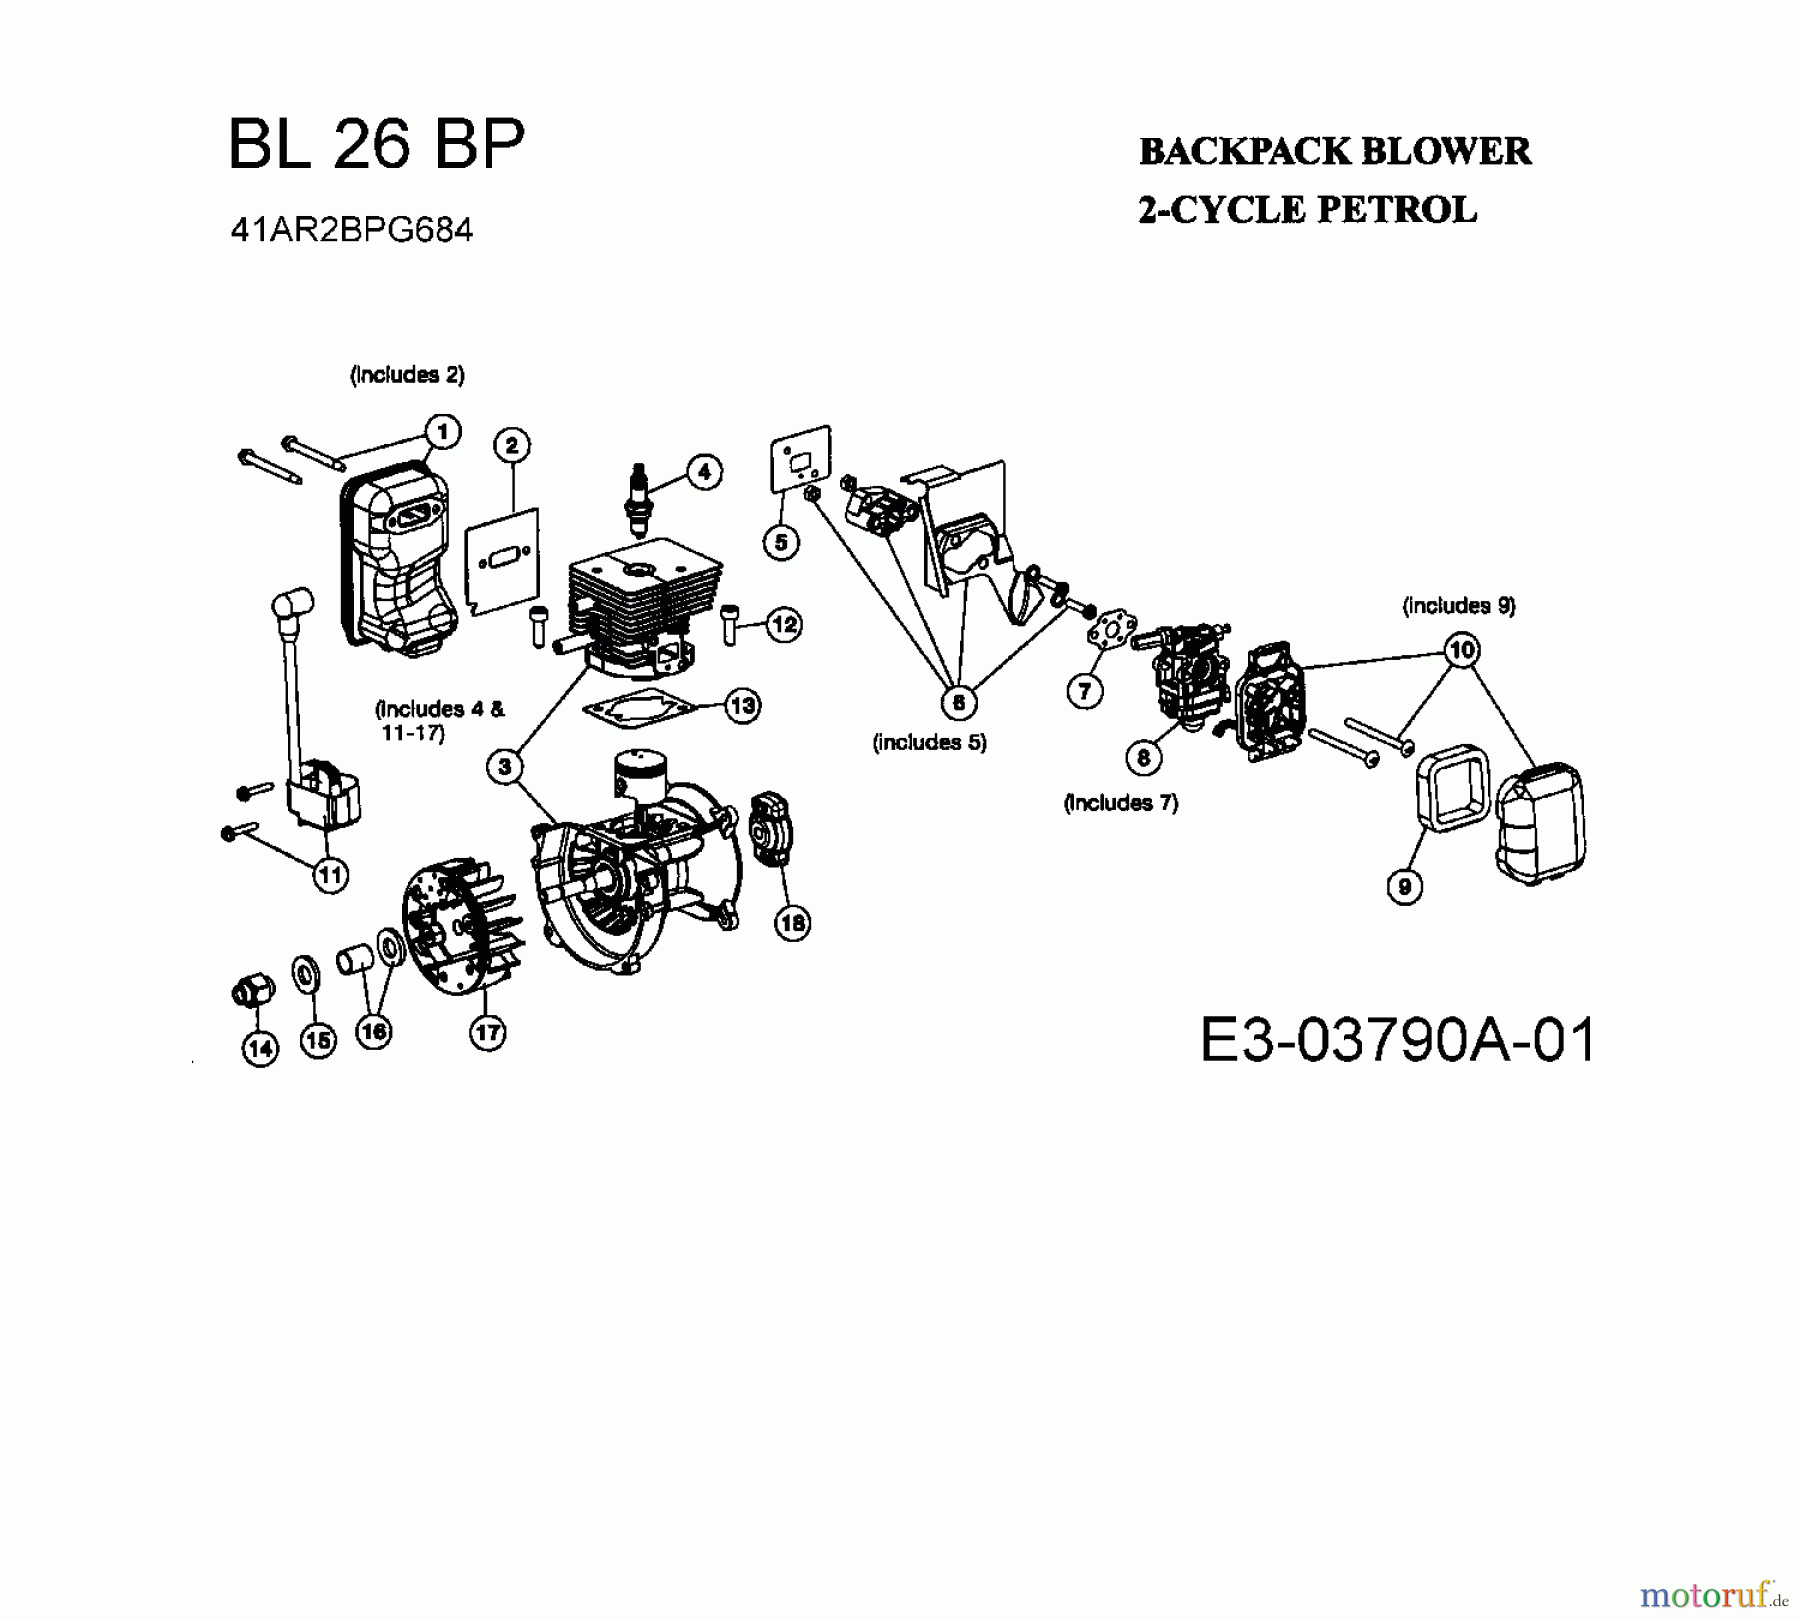  Bolens Laubläser, Laubsauger BL 26 BP 41AR2BPG684  (2008) Motor